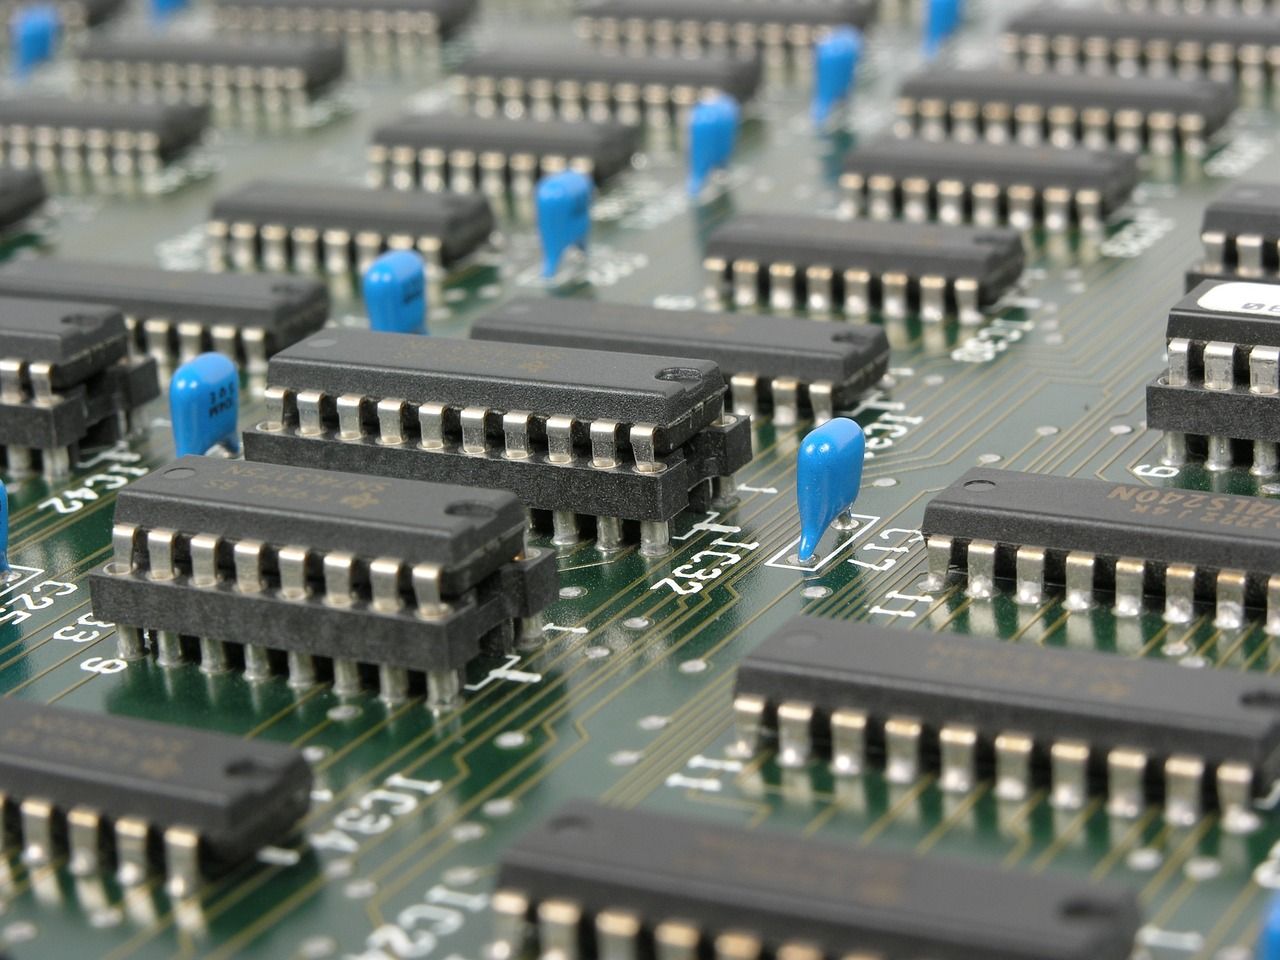 Dekoratives Symbolfoto zeigt elektronische Schaltkreise eine Motherboards.